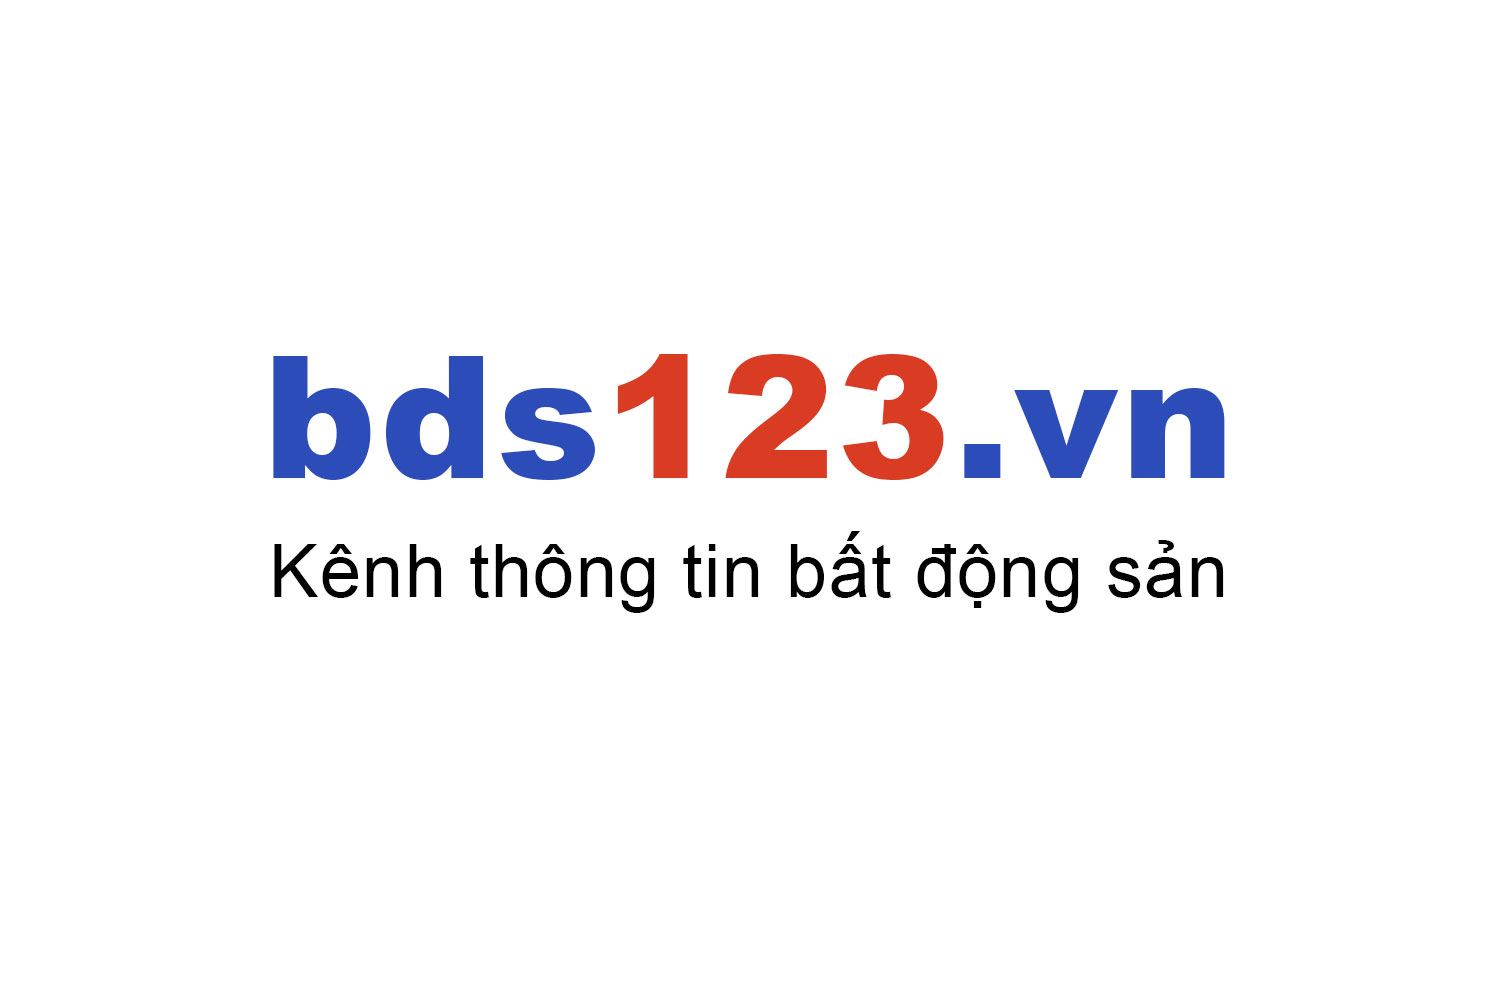 Mua bán chung cư C14 Bộ Quốc Phòng ưu đãi giá tốt T10/2022 - Bds123.vn